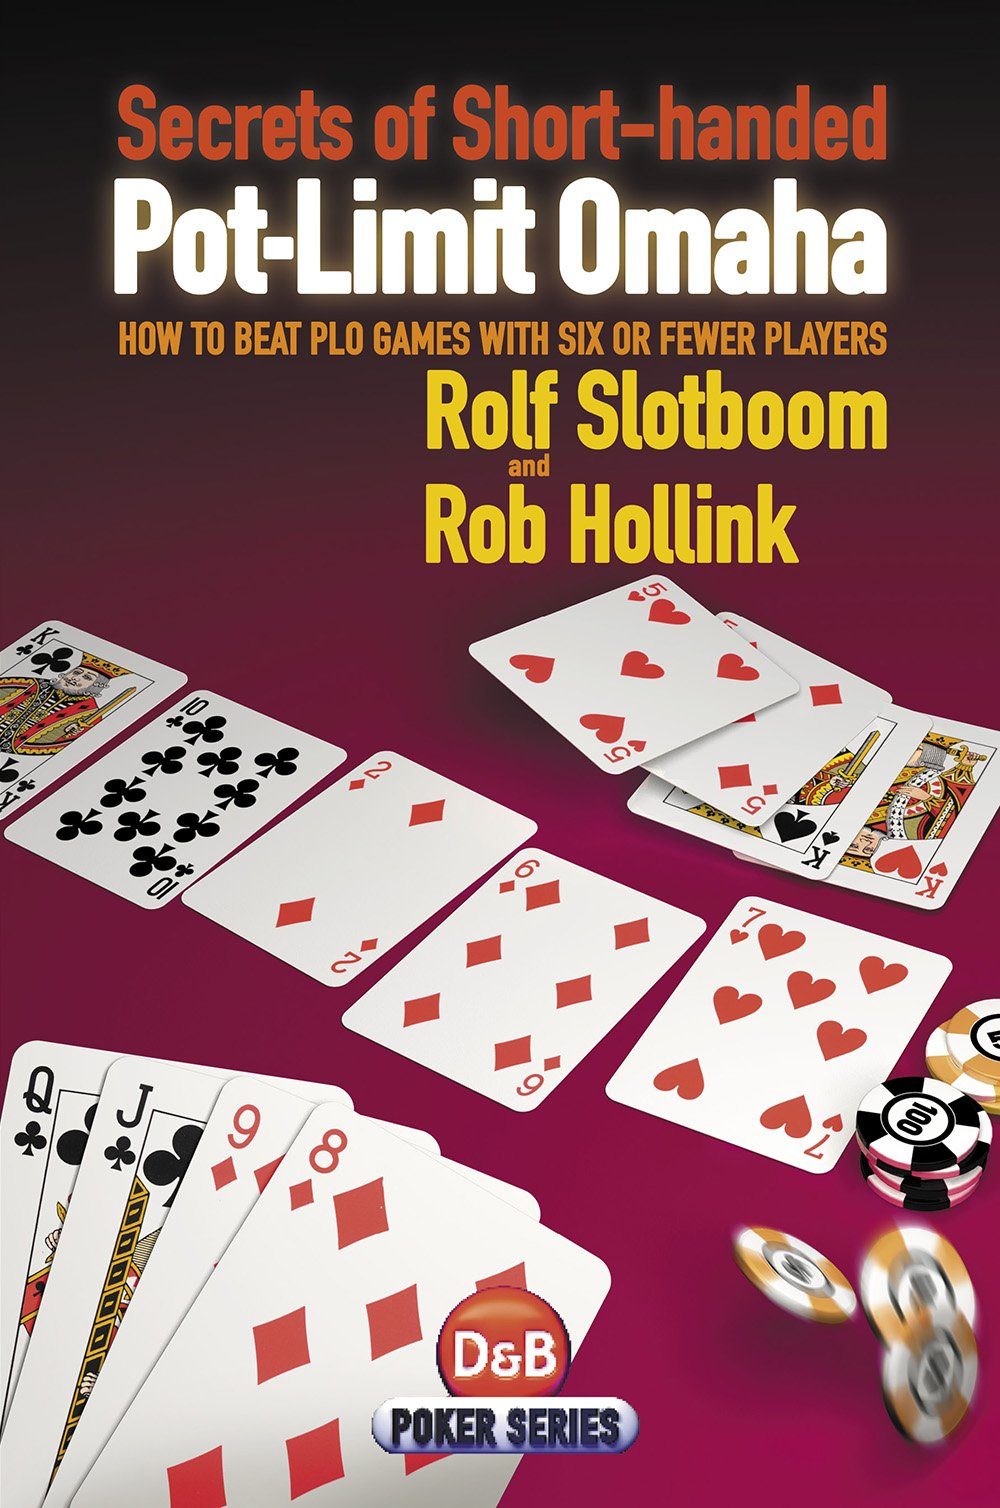 Pokerole Handbook - Flip eBook Pages 451-489